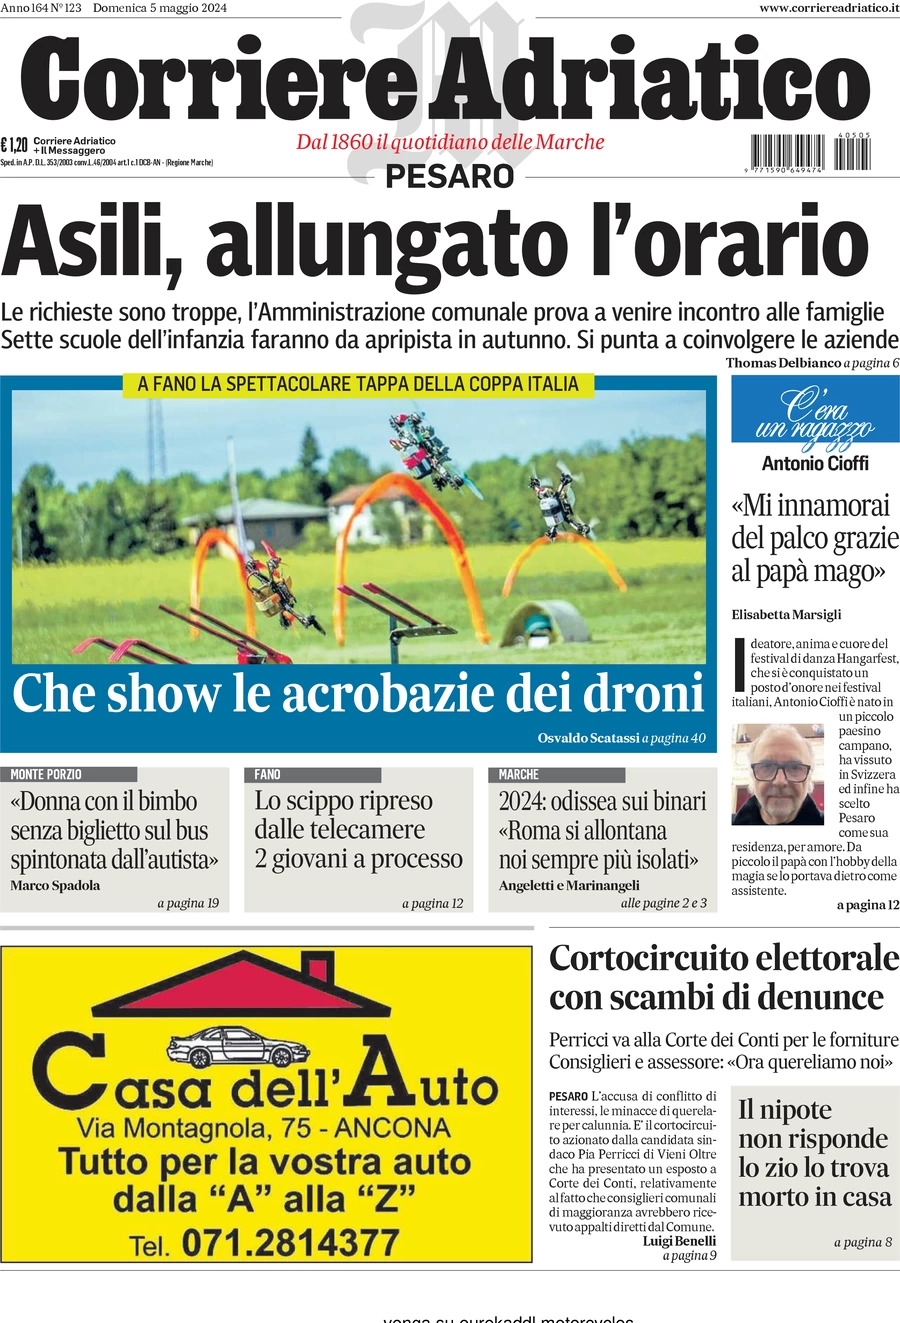 anteprima della prima pagina di Corriere Adriatico (Pesaro)